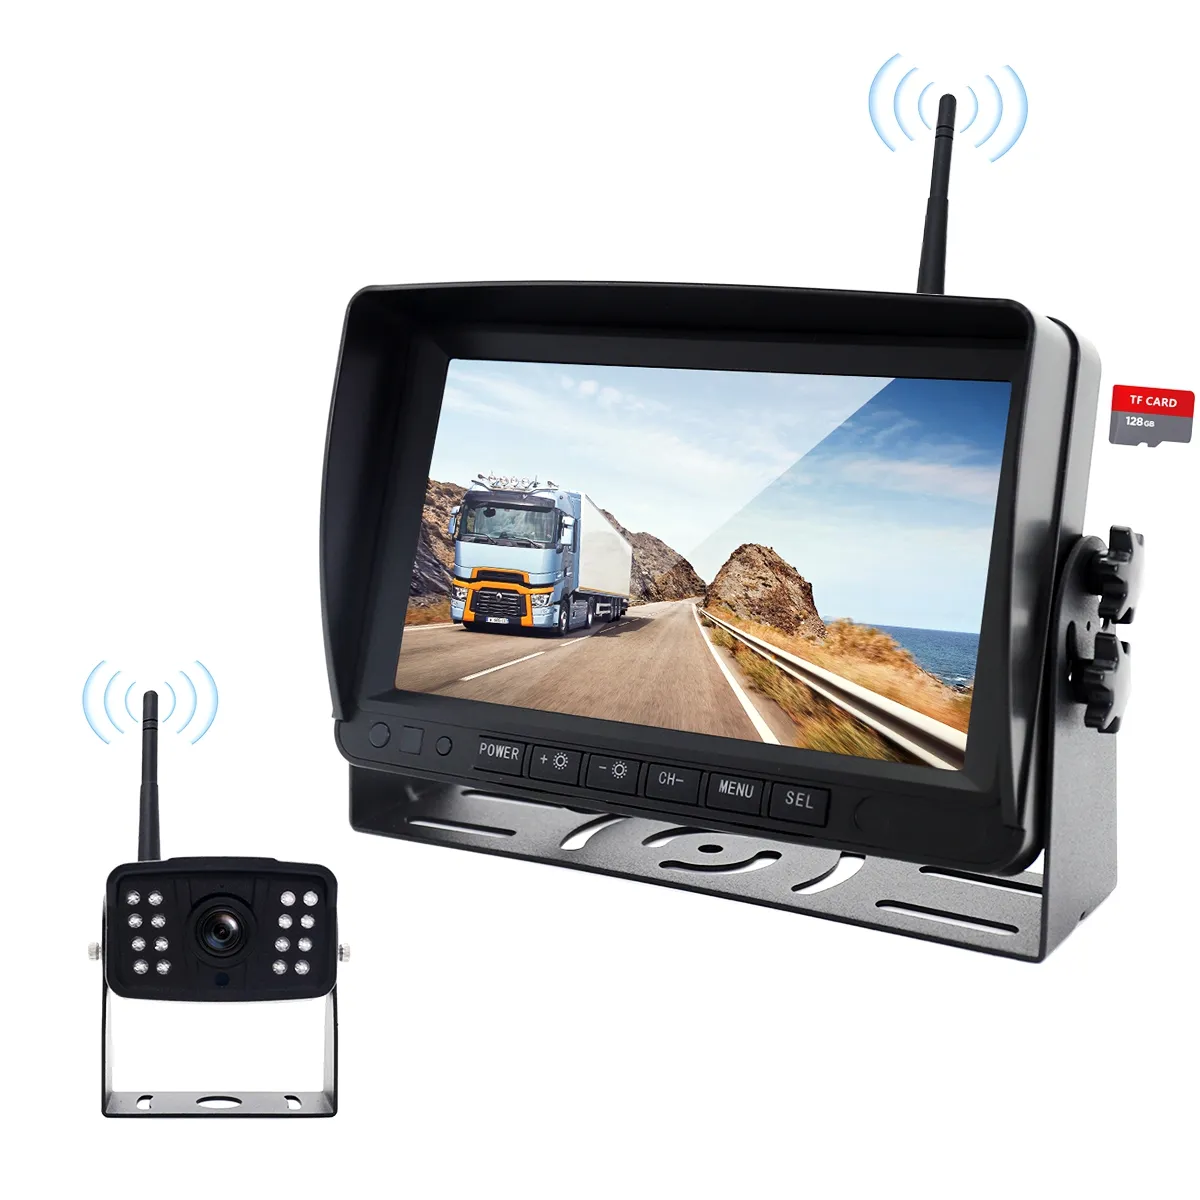 Monitor de marcha atrás de 7 pulgadas para coche, cámara inalámbrica AHD con DVR, visión nocturna, grabadora de respaldo inverso, Wifi, el más vendido